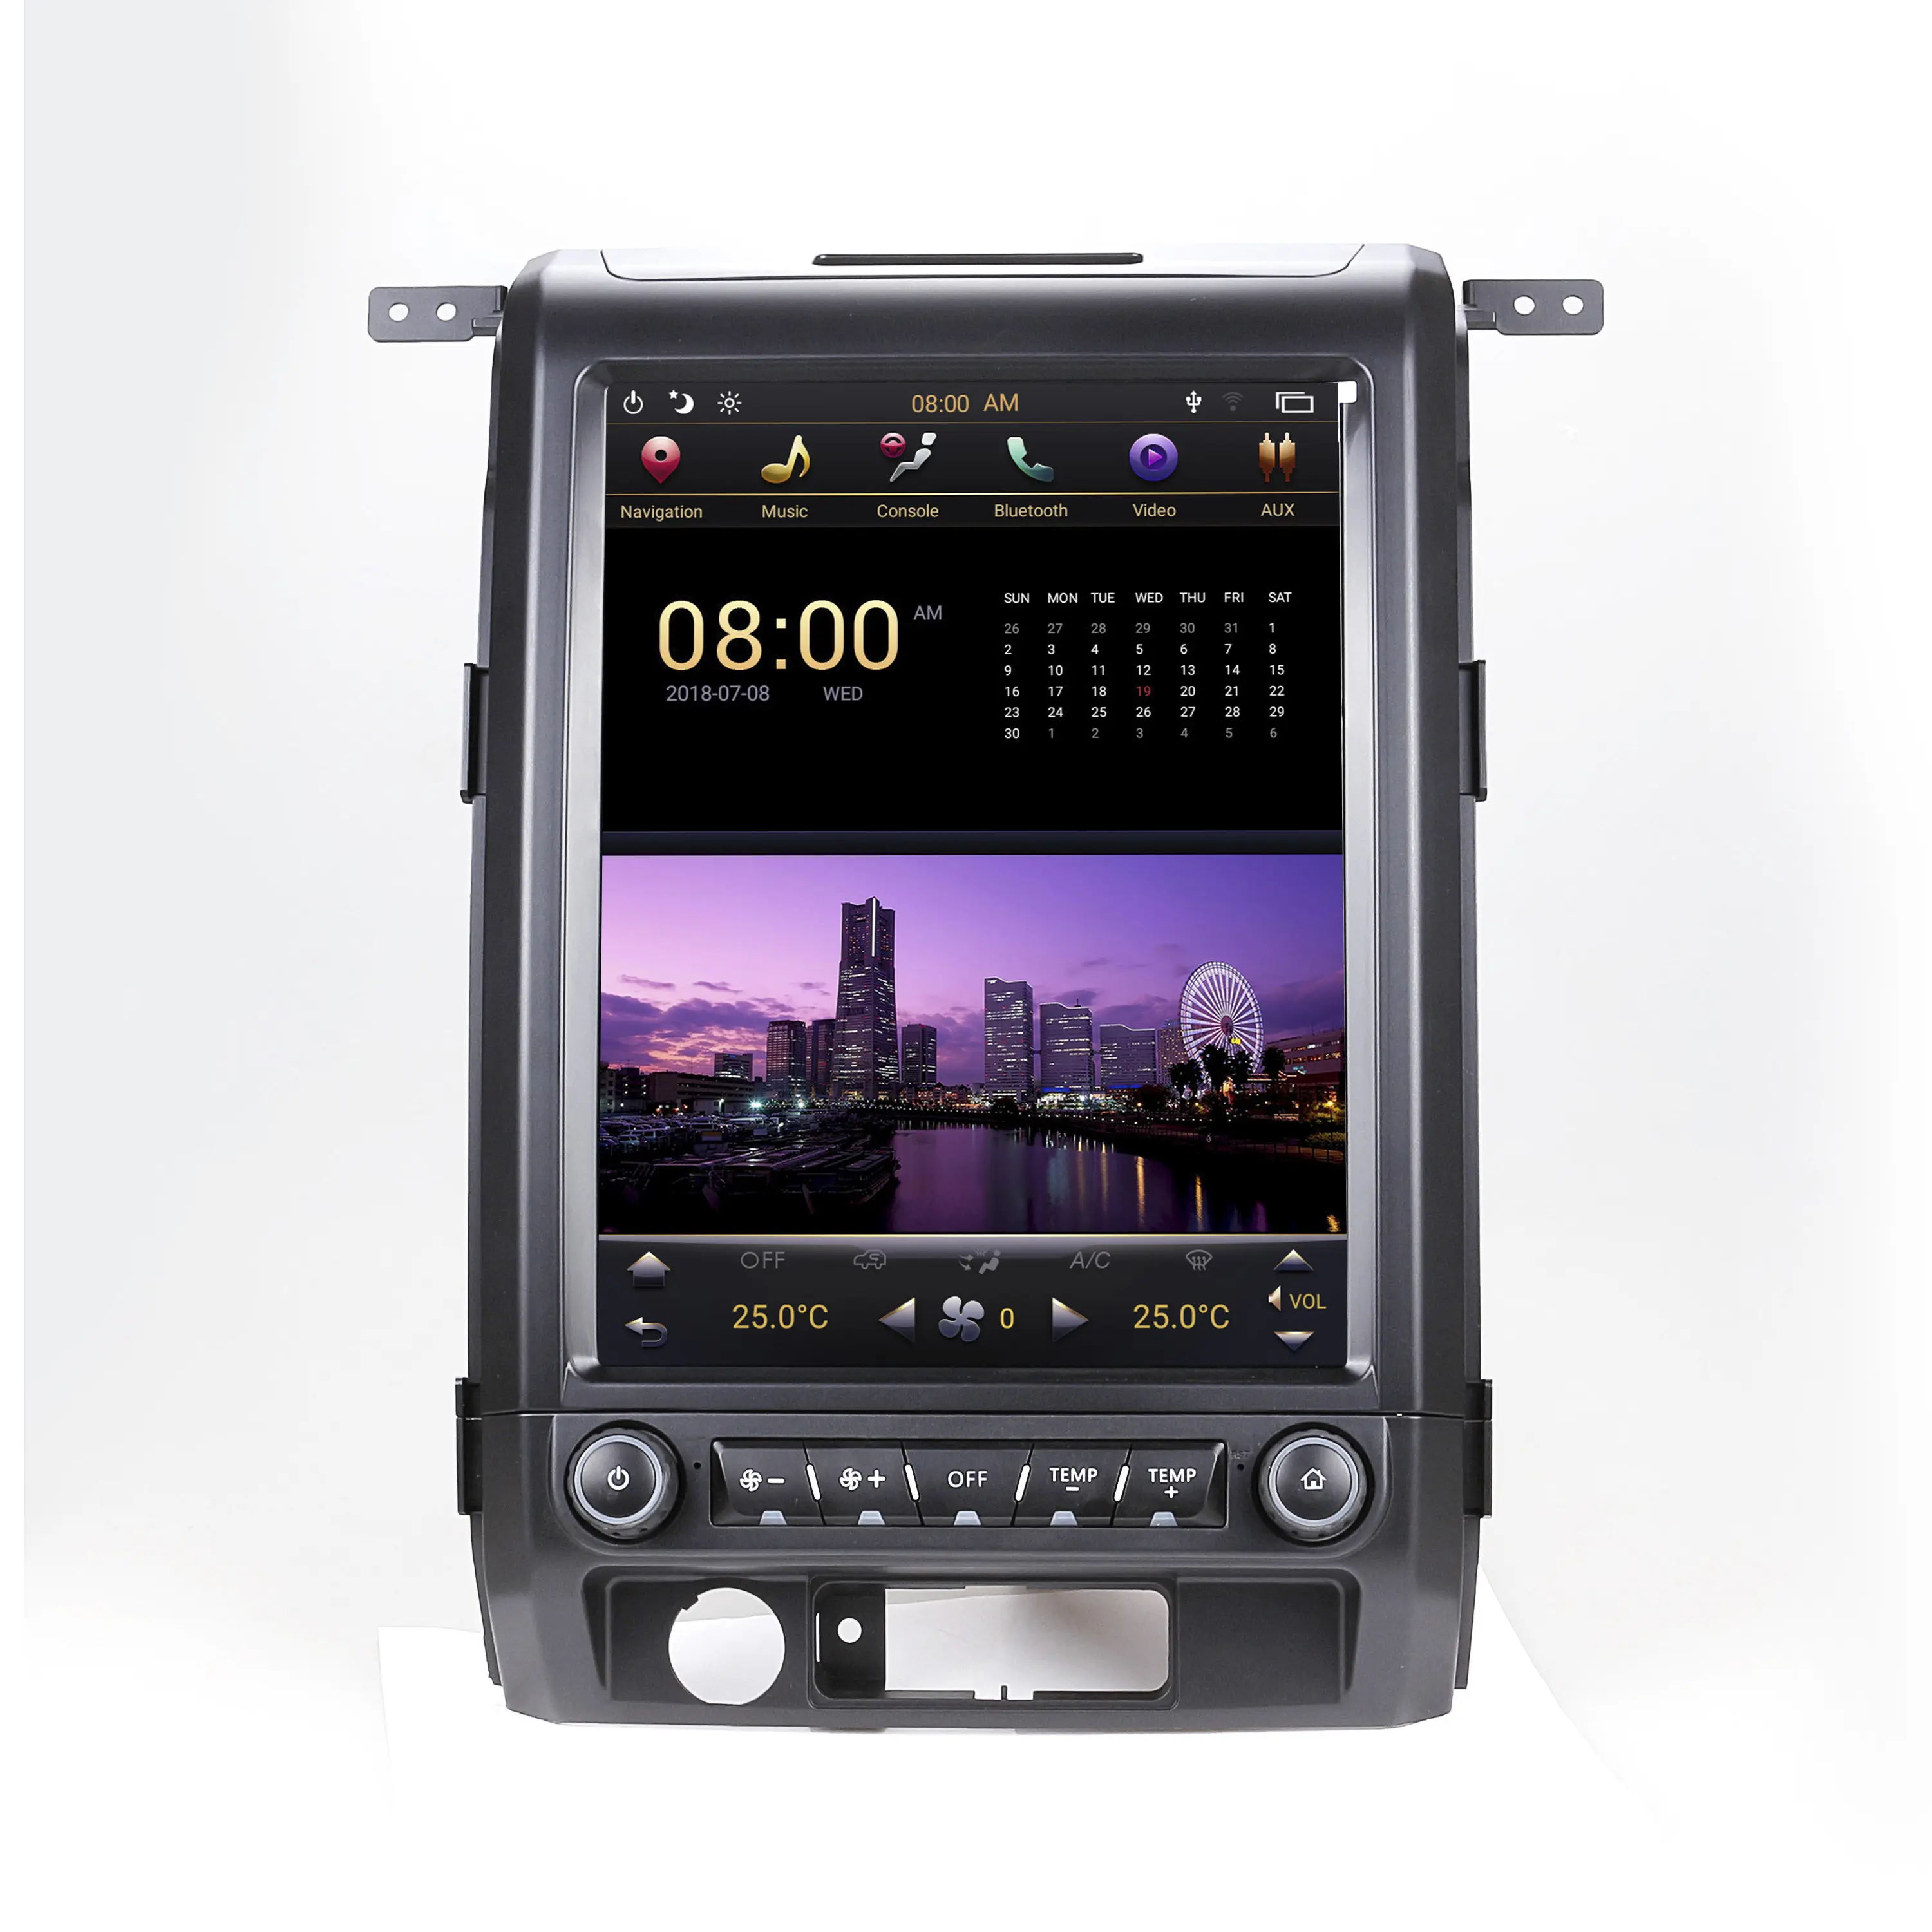 2009-2012 Ford Raptor için F150 GPS nav entegre makine yeni ve eski Raptor F150 büyük ekran dikey ekran navi Android otomatik